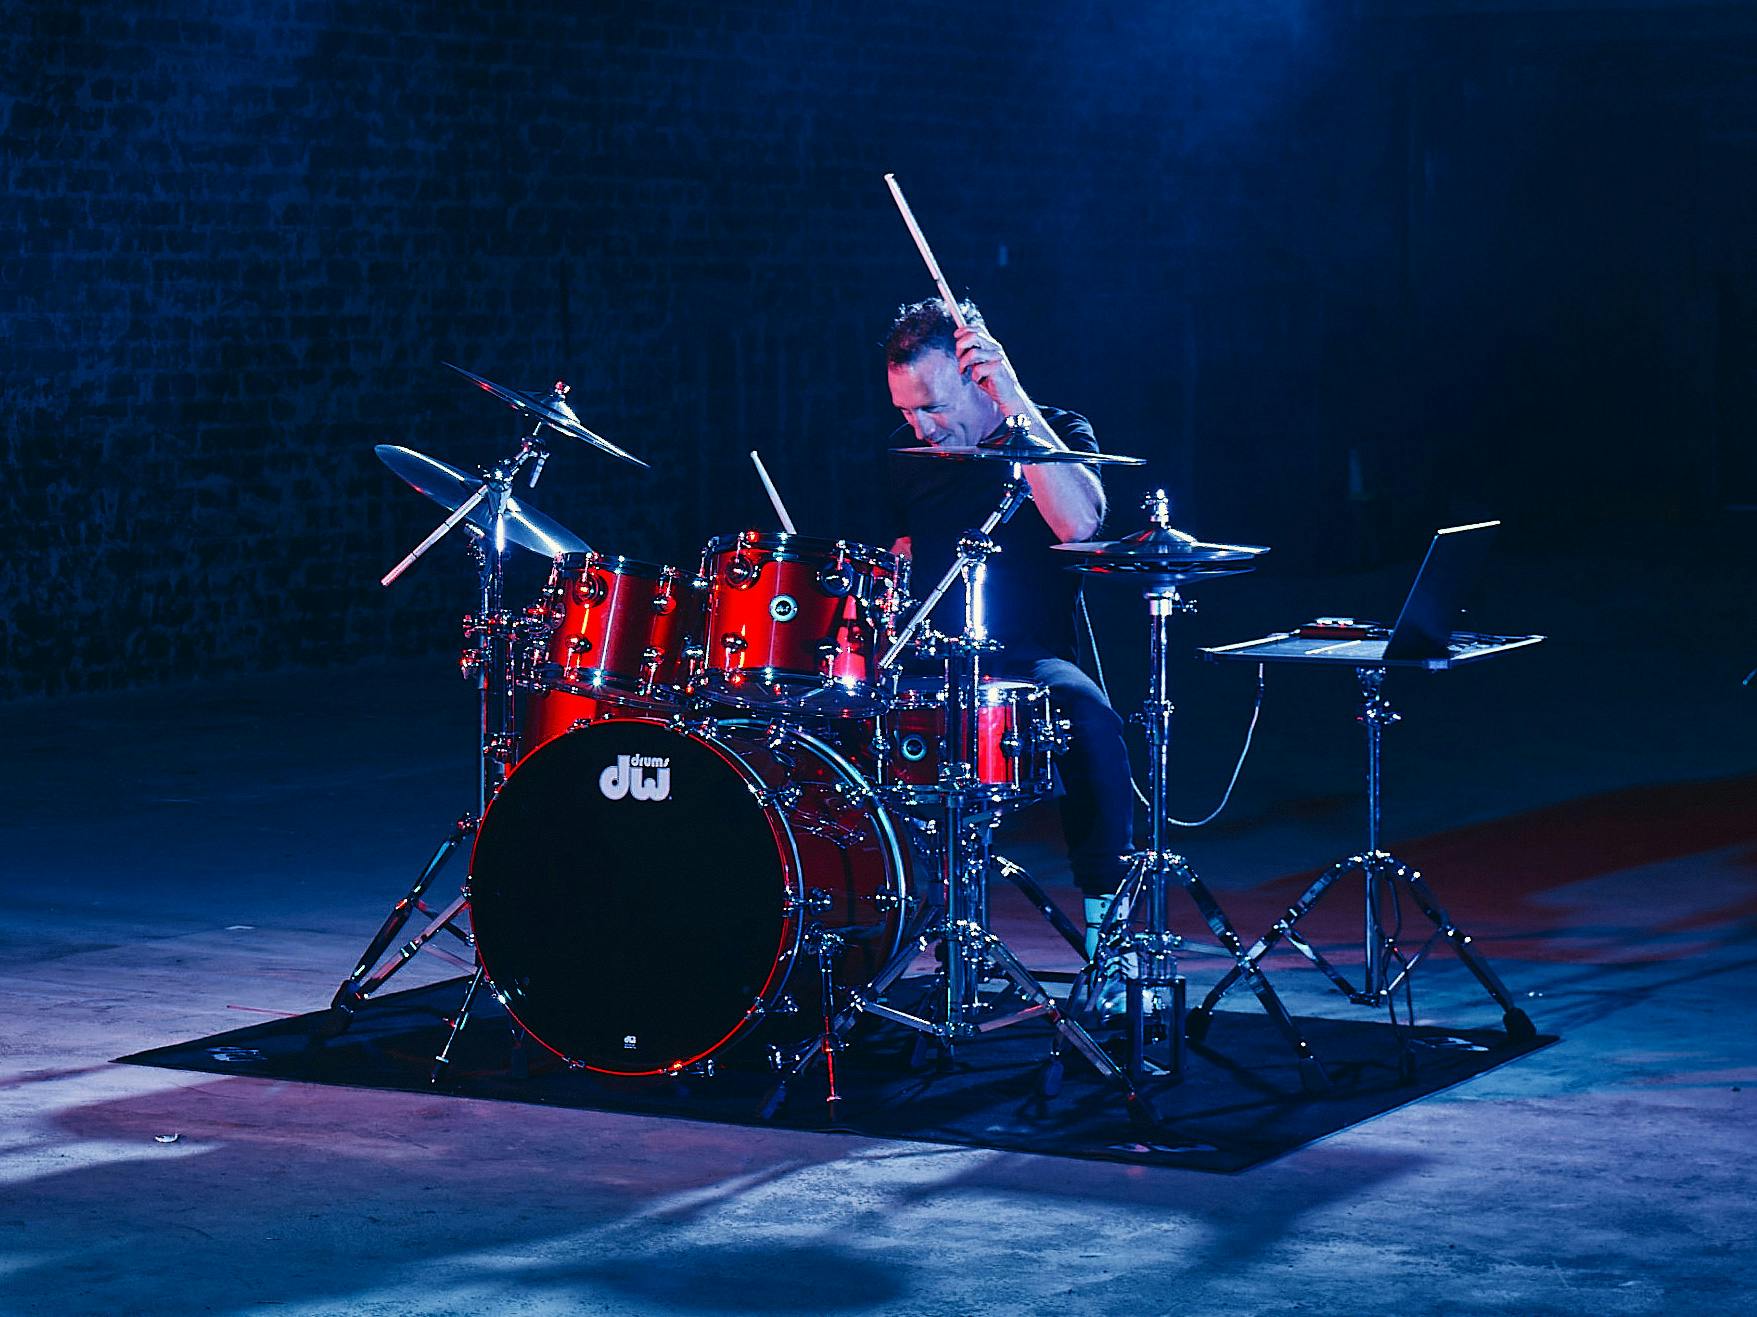 Stephen Perkins playing DWe Drums